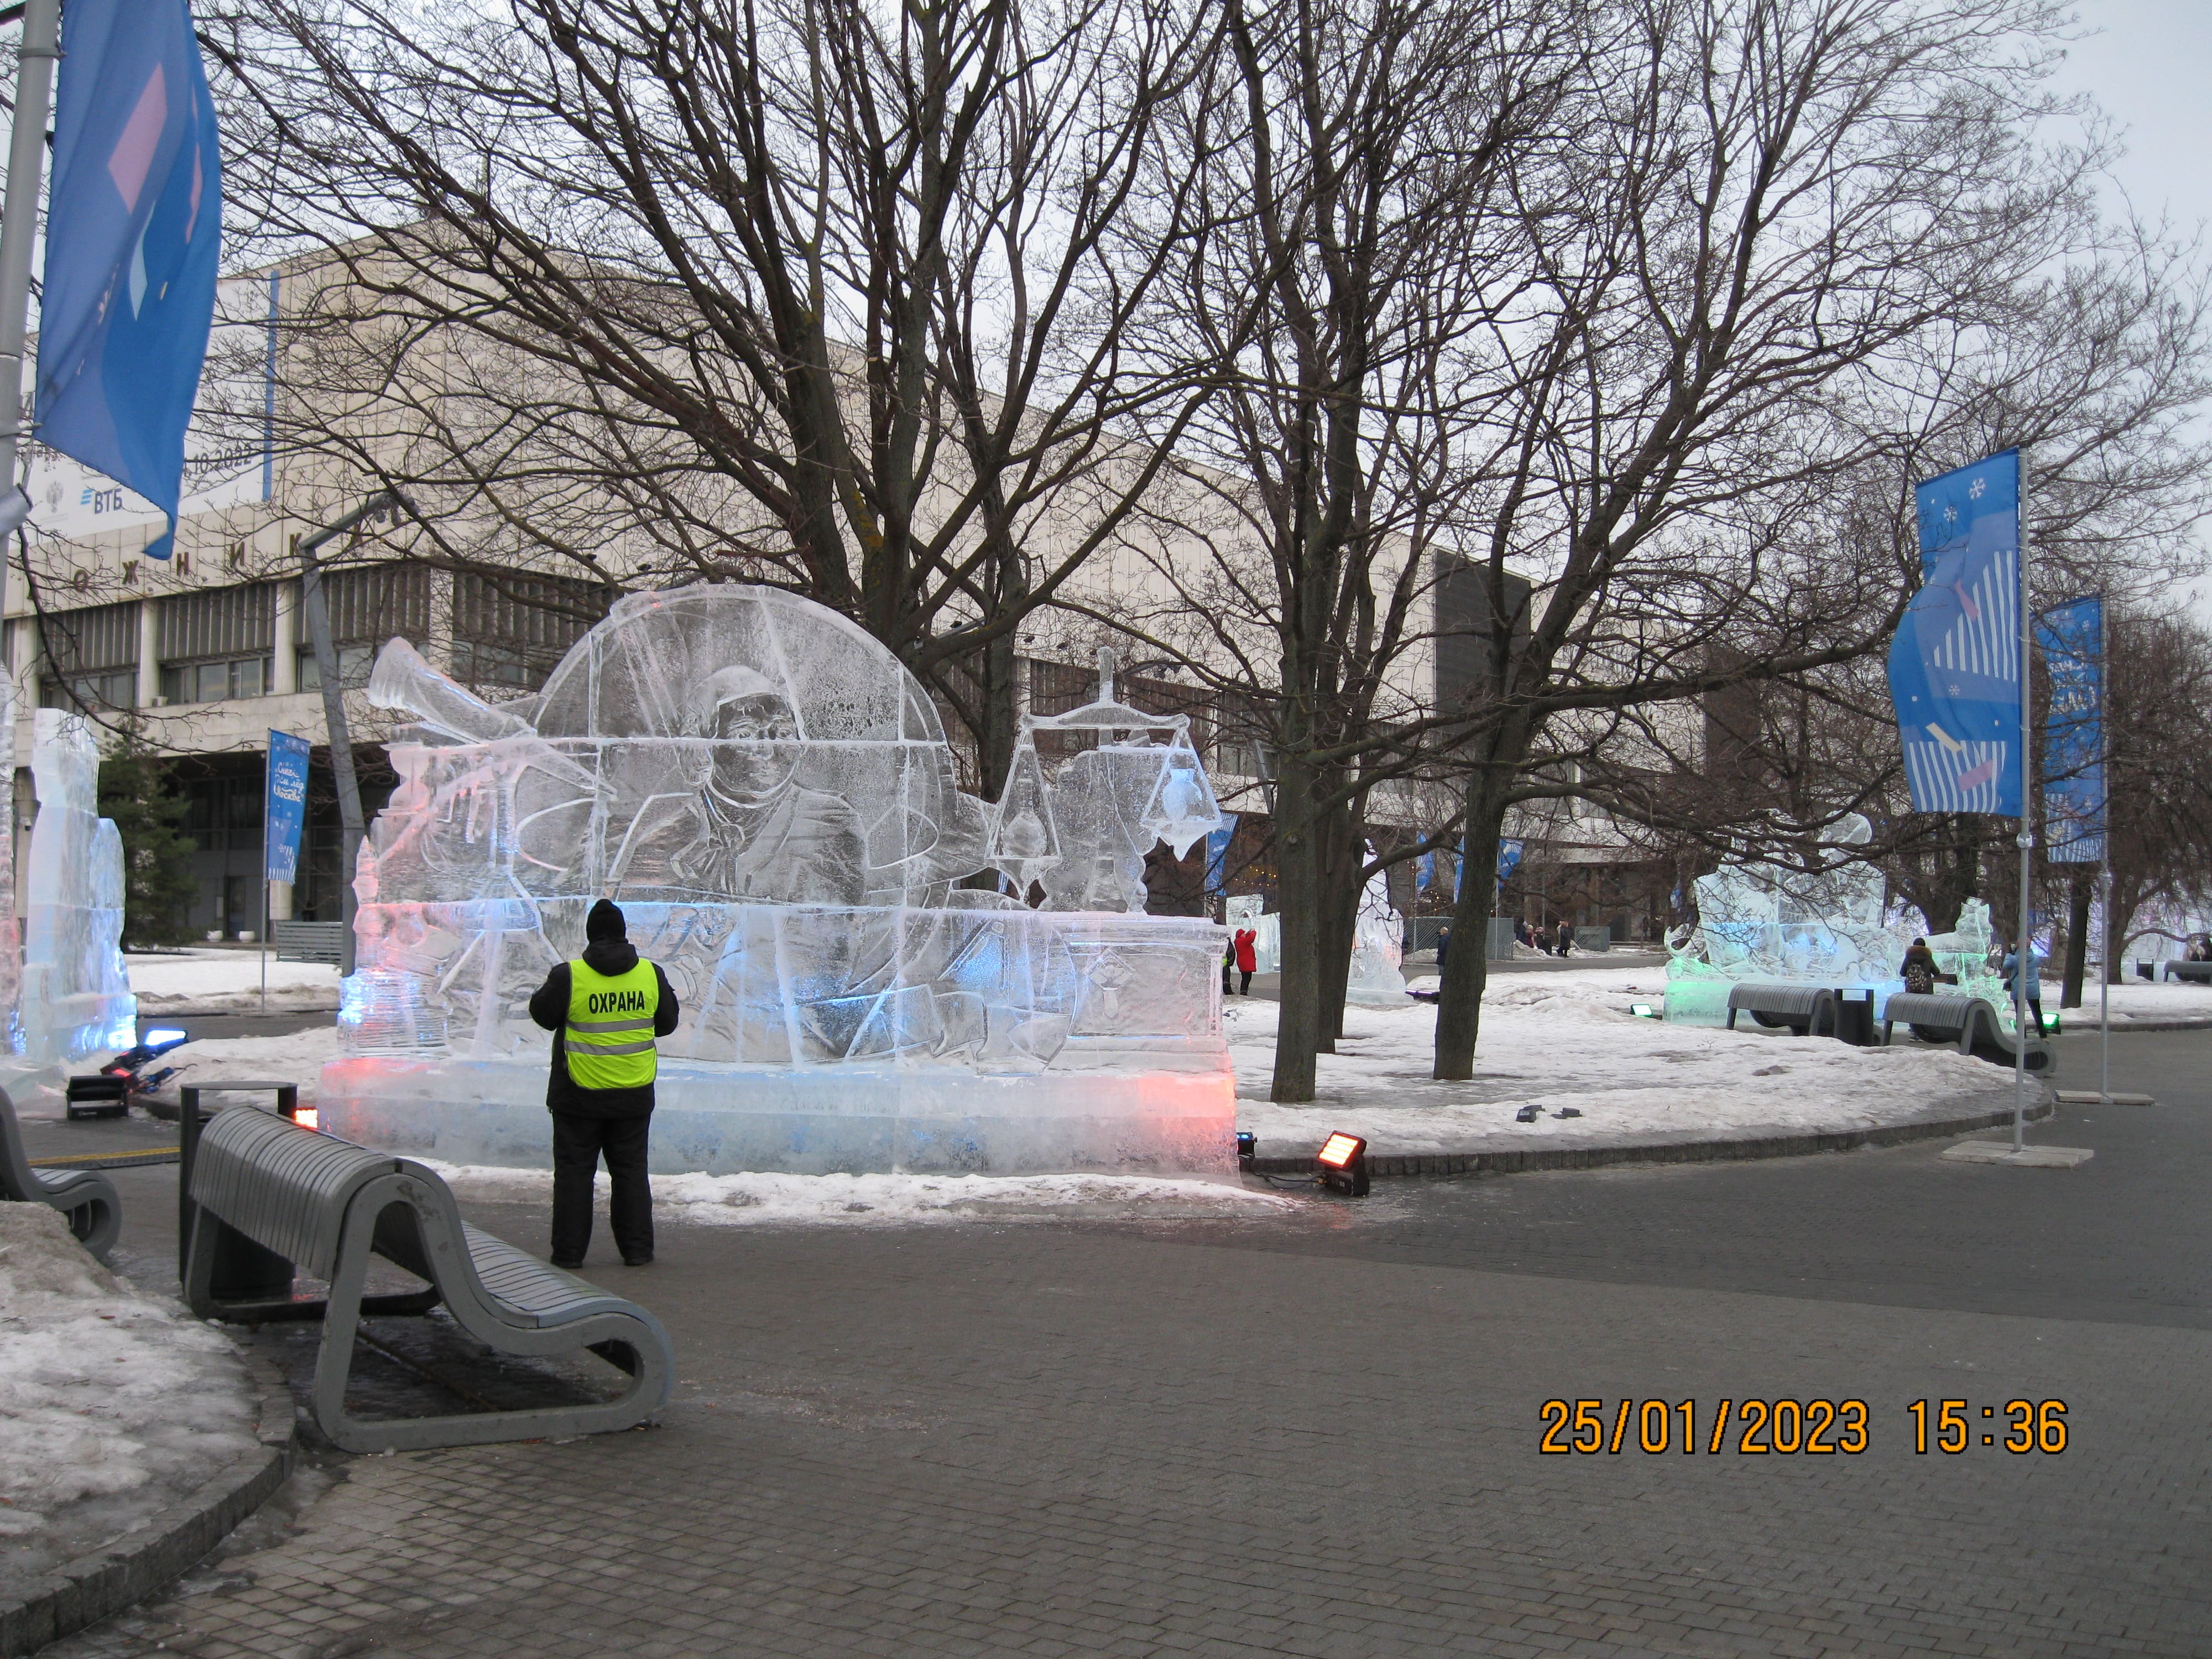  Выставка ледяных скульптур в Парке Музеон Москвы "Снег и Лёд". Ледяные и снежные фигуры и скульптуры